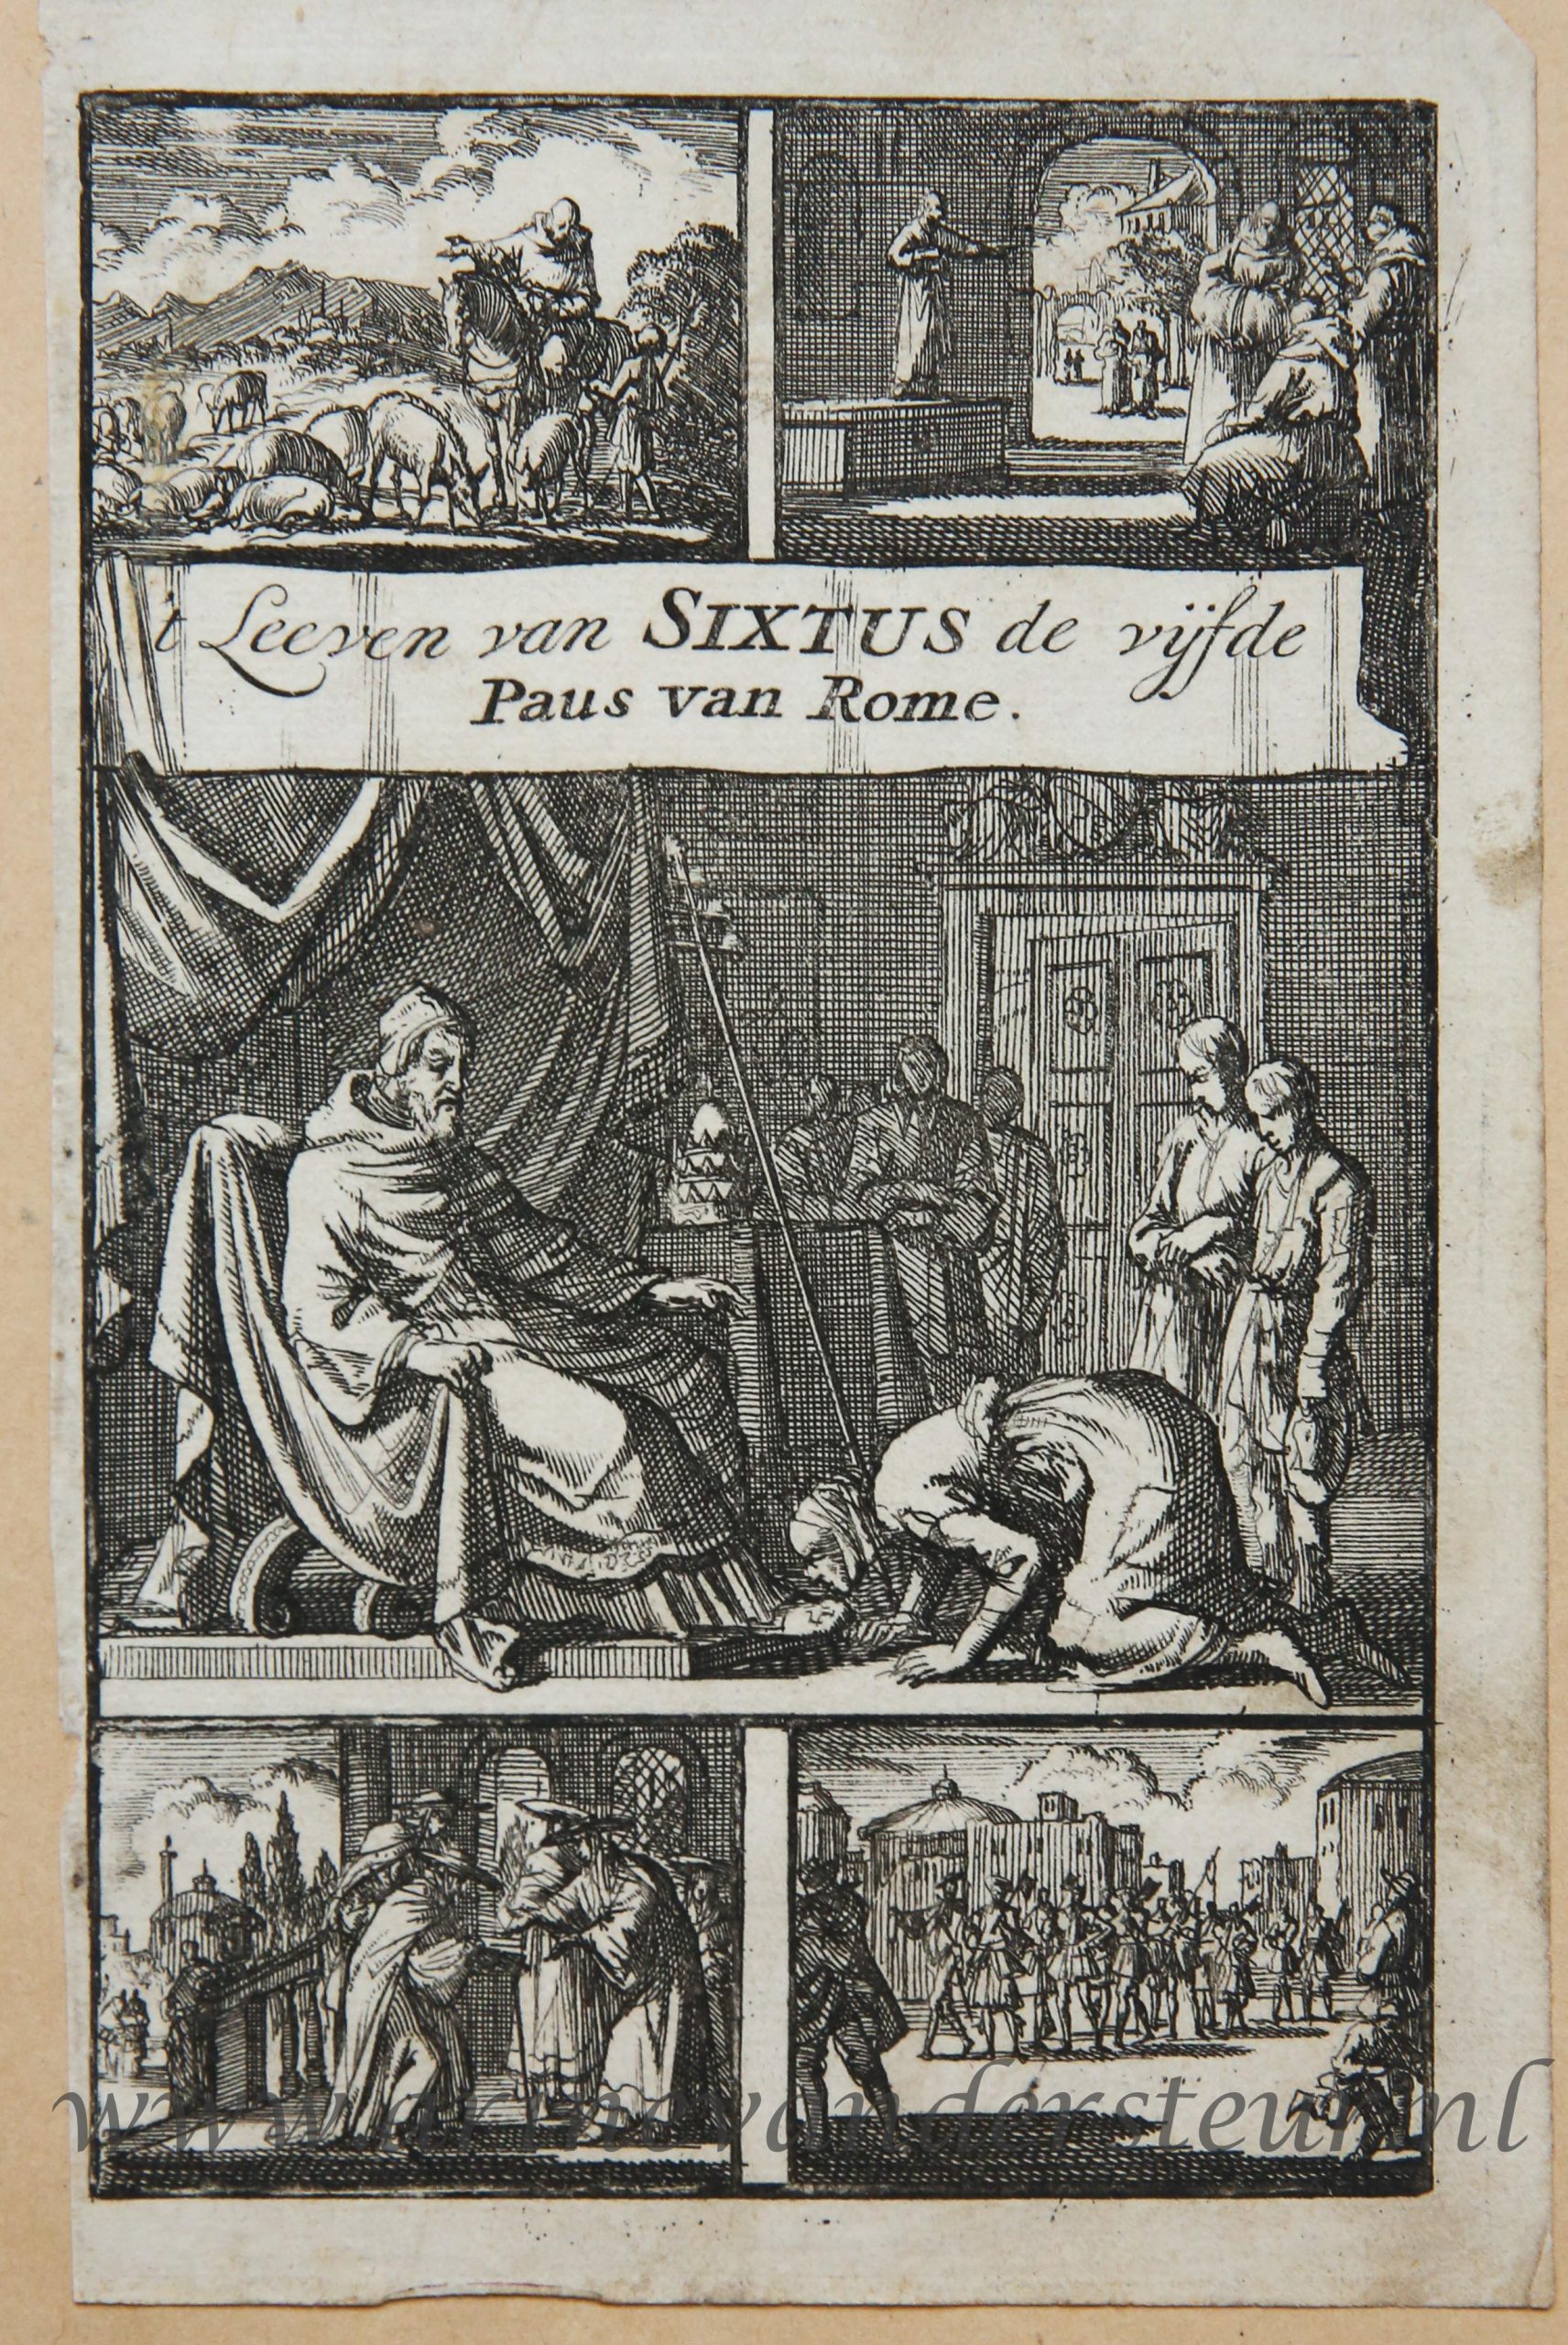 [Antique title page, 1697] Camilla, de zuster van paus Sixtus V, kust geknield zijn voet ['t Leeven van SIXTUS de vijfde Paus van Rome], published 1697, 1 p.